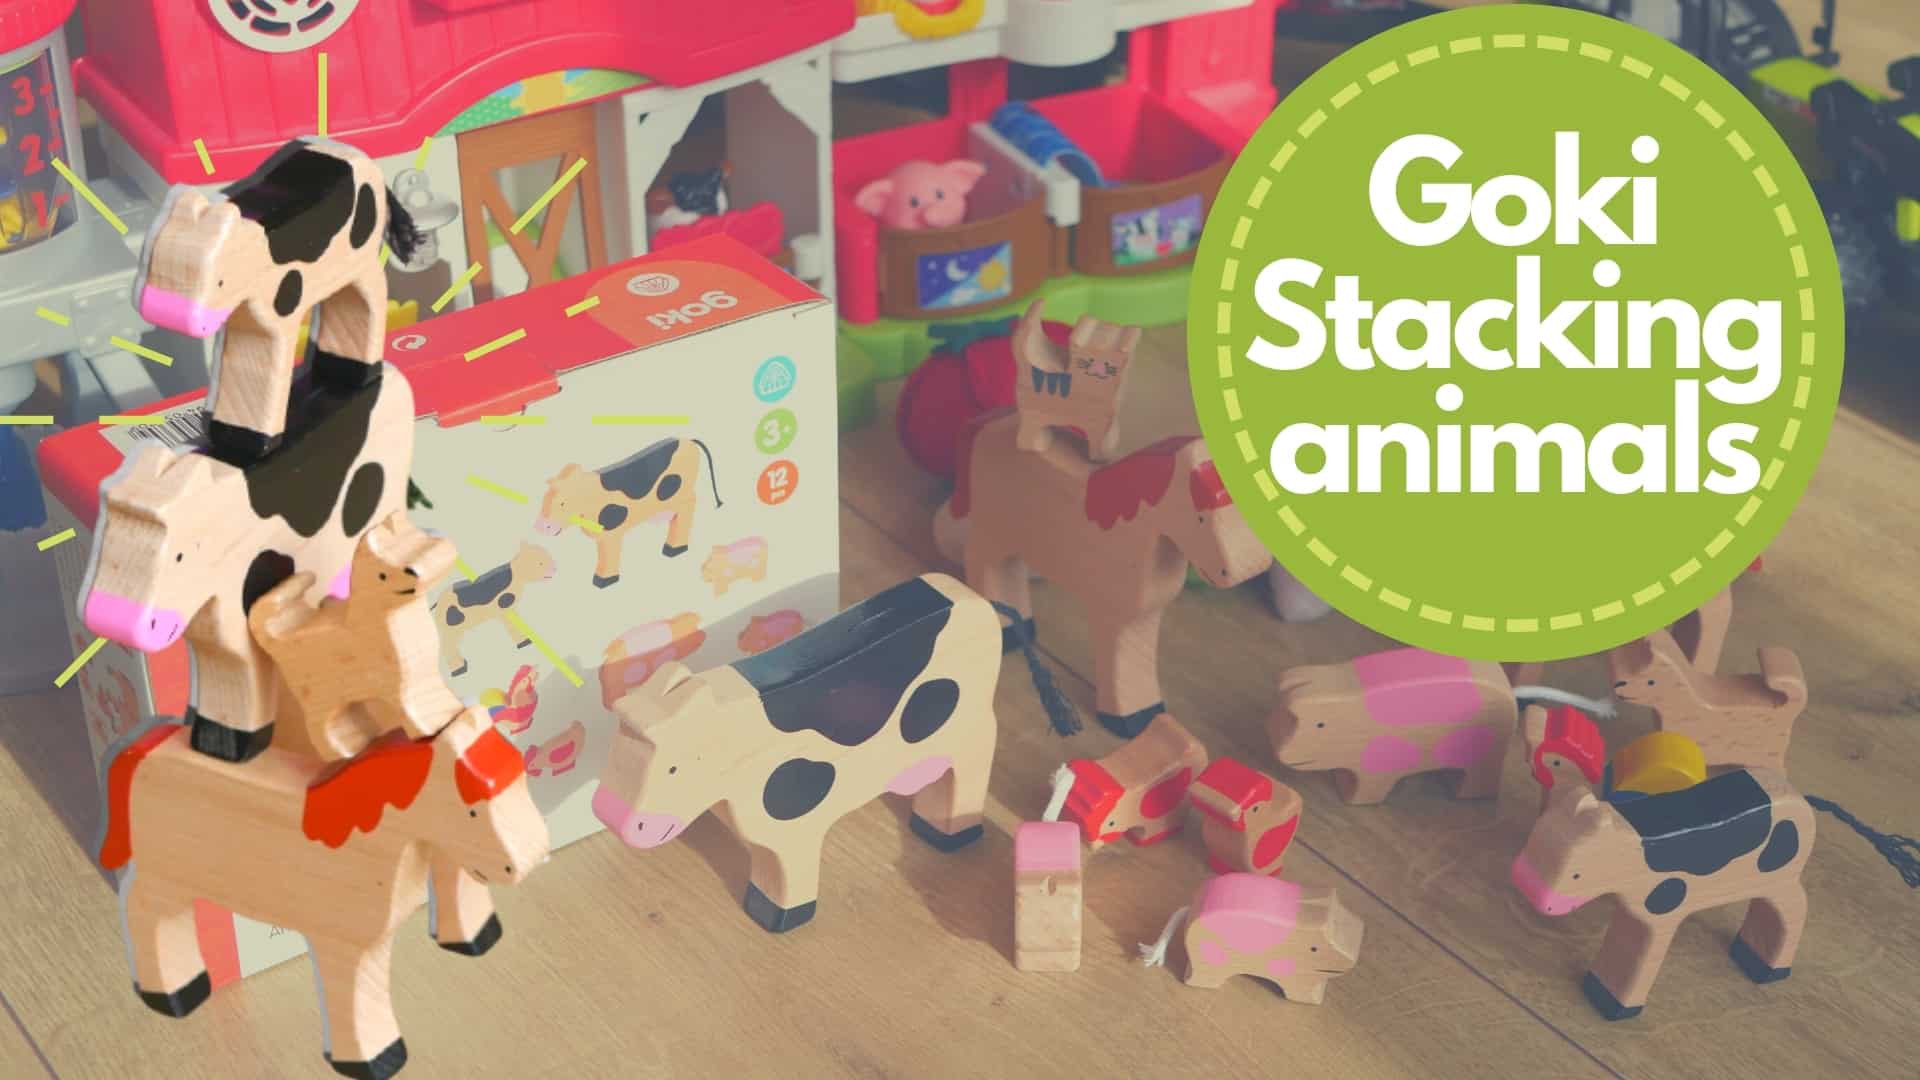 Goki stacking animals